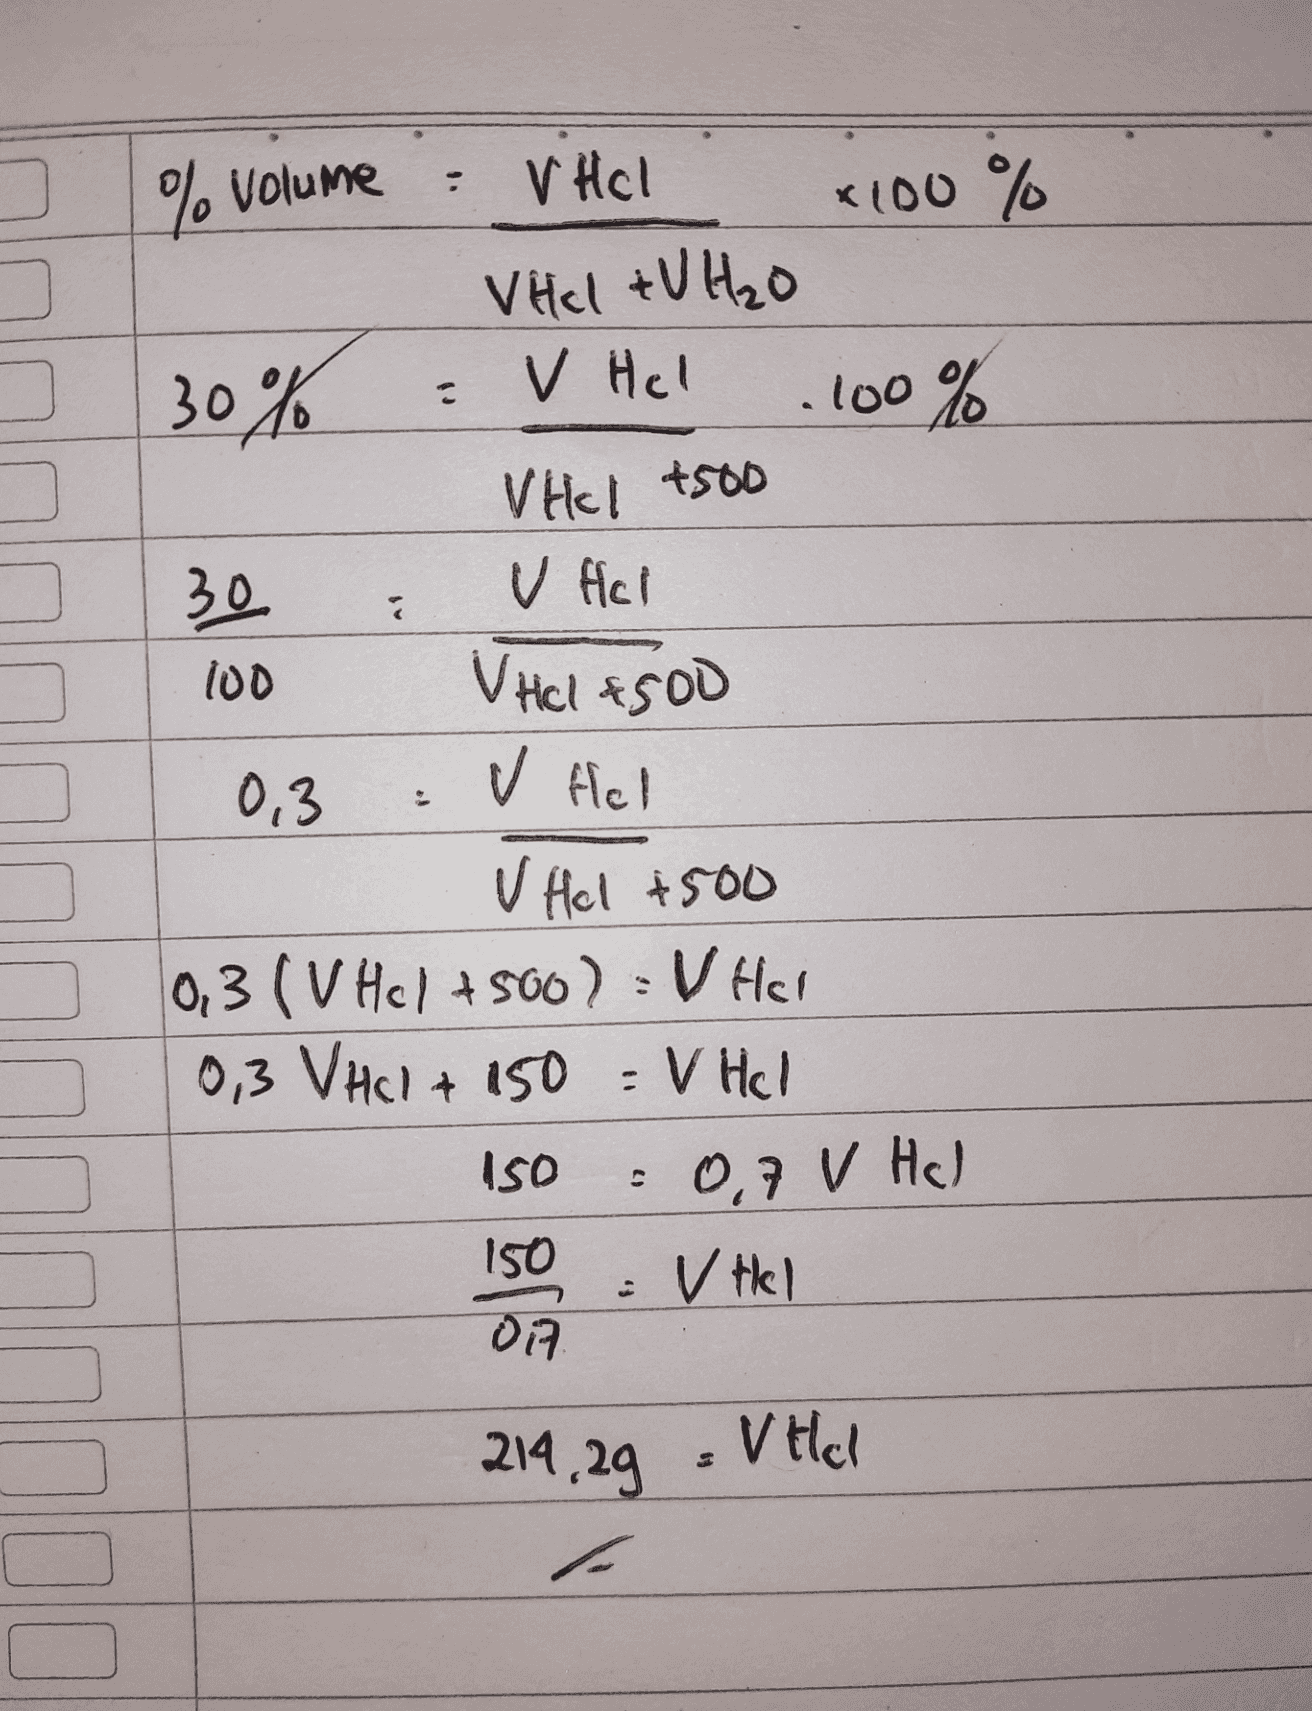 3 % Volume V Hol X100 % VHcl + V H₂O V Hel . 100% Vikl 4500 30% 30 2 V Hol VHCl 4500 100 v fel 0,3 V Hel +500 10,3 (v Hcl +500) = V Hel 0,3 VHCl + 150 = V Hel ISO 0,7 V Hal 150 v tel 07 214,29 V Hol 